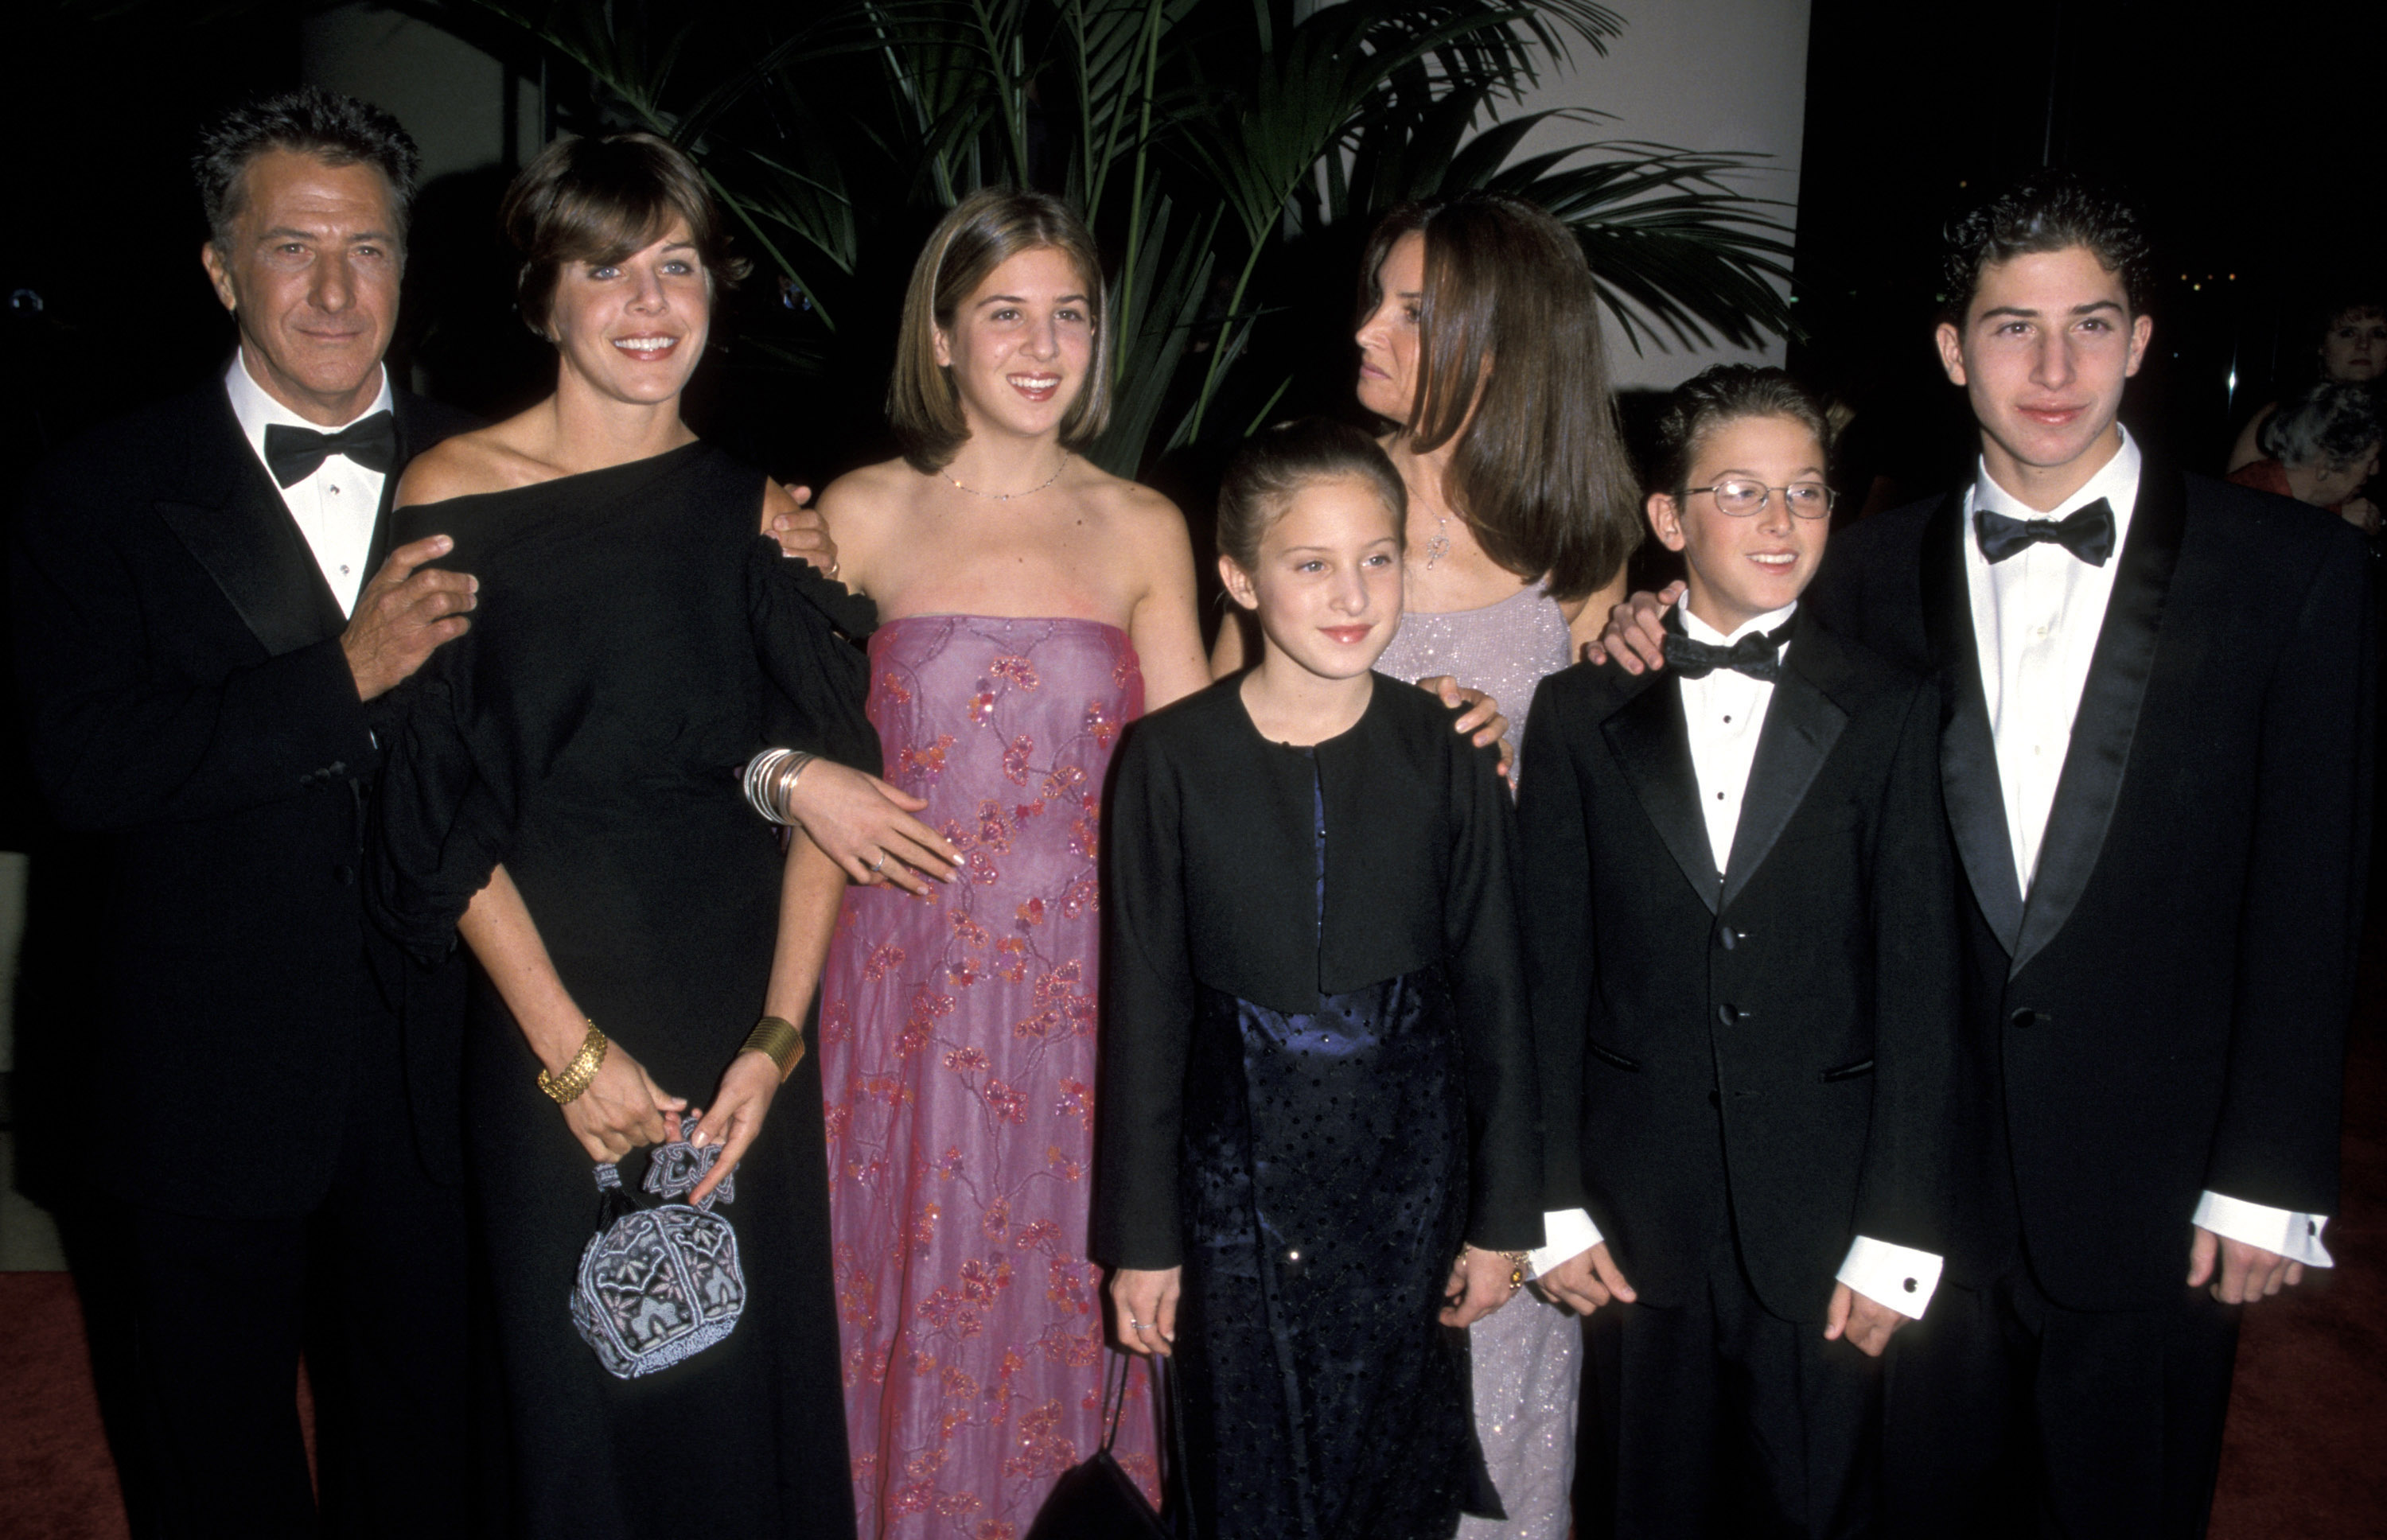 Die Frau, der Schauspieler und ihre Kinder während der Verleihung des American Film Institute Honors Dustin Hoffman with Life Achievement Award in Beverly Hills, Kalifornien am 18. Februar 1999. | Quelle: Getty Images